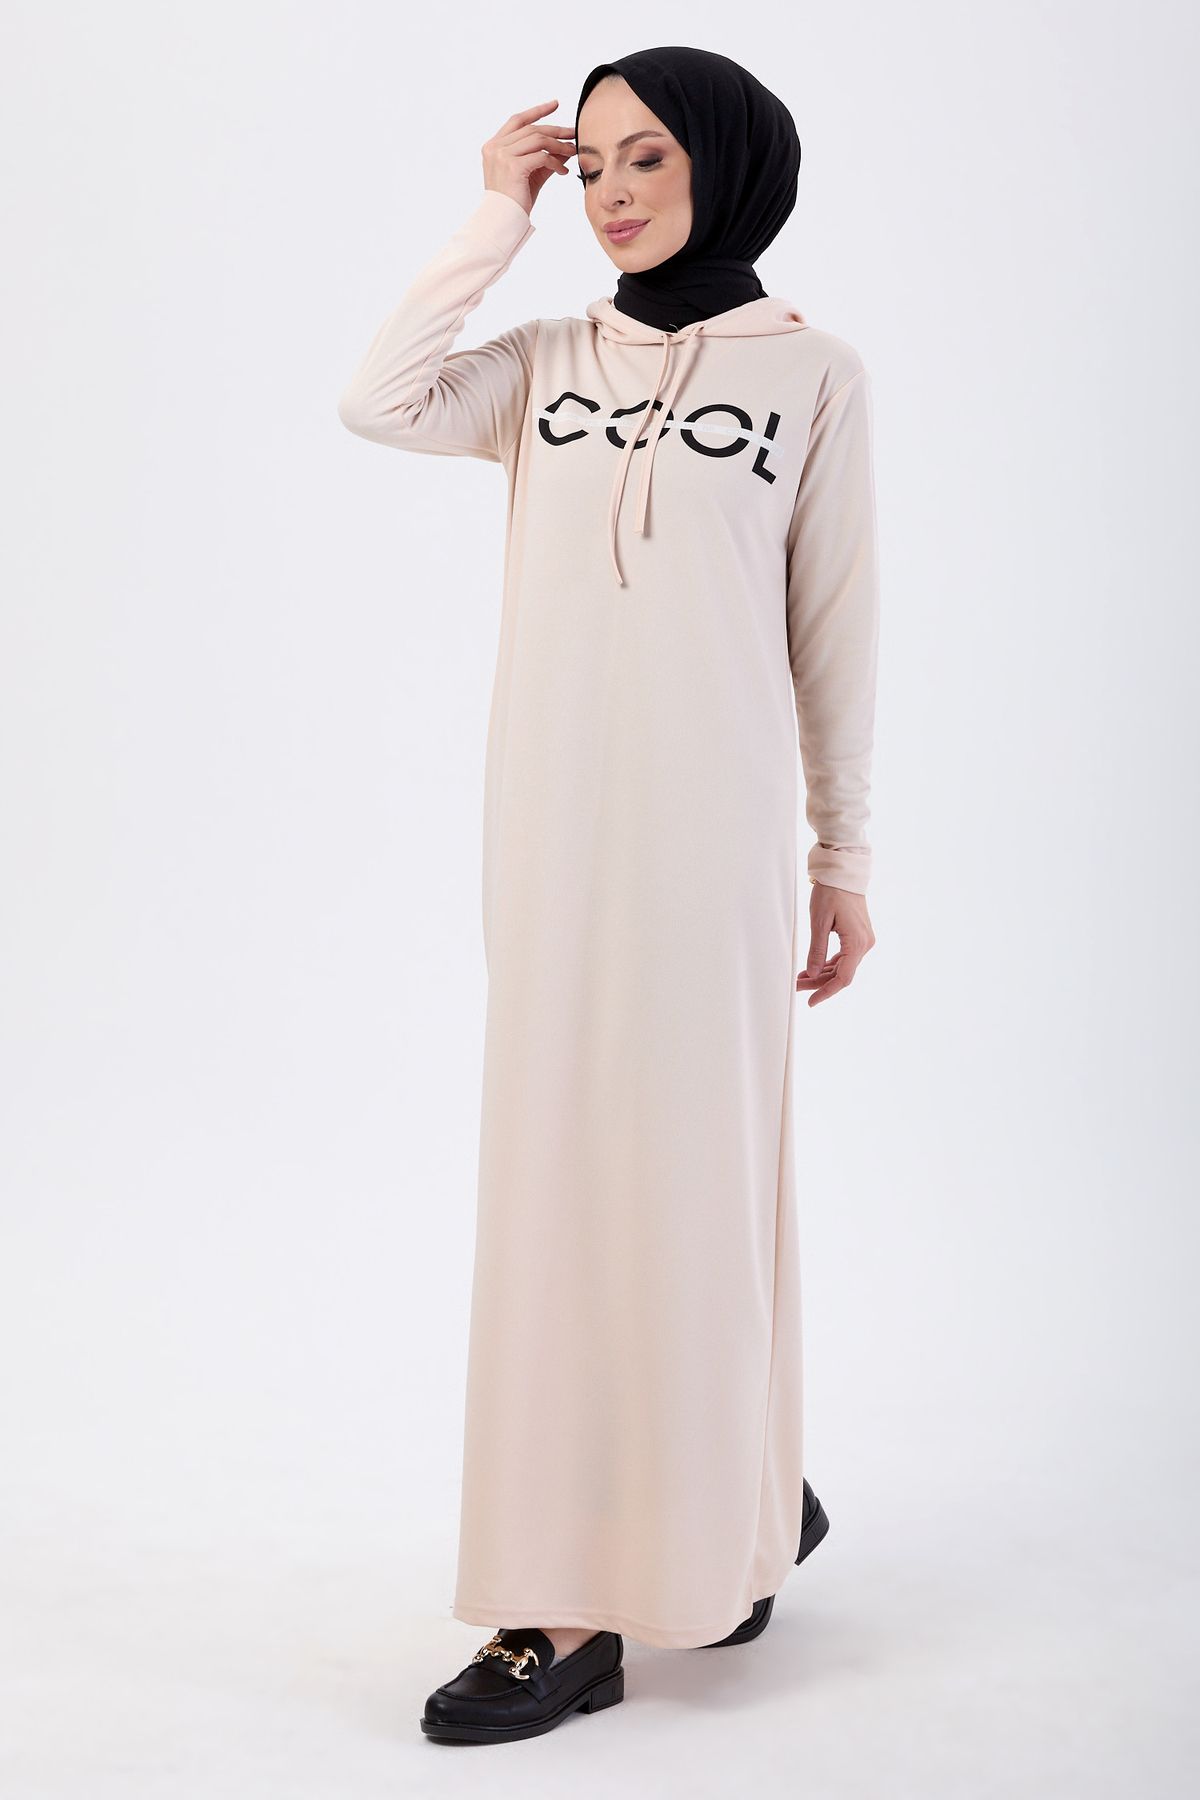 TOFİSA Düz Kapşonlu Yaka Kadın Bej Elbise - 13089